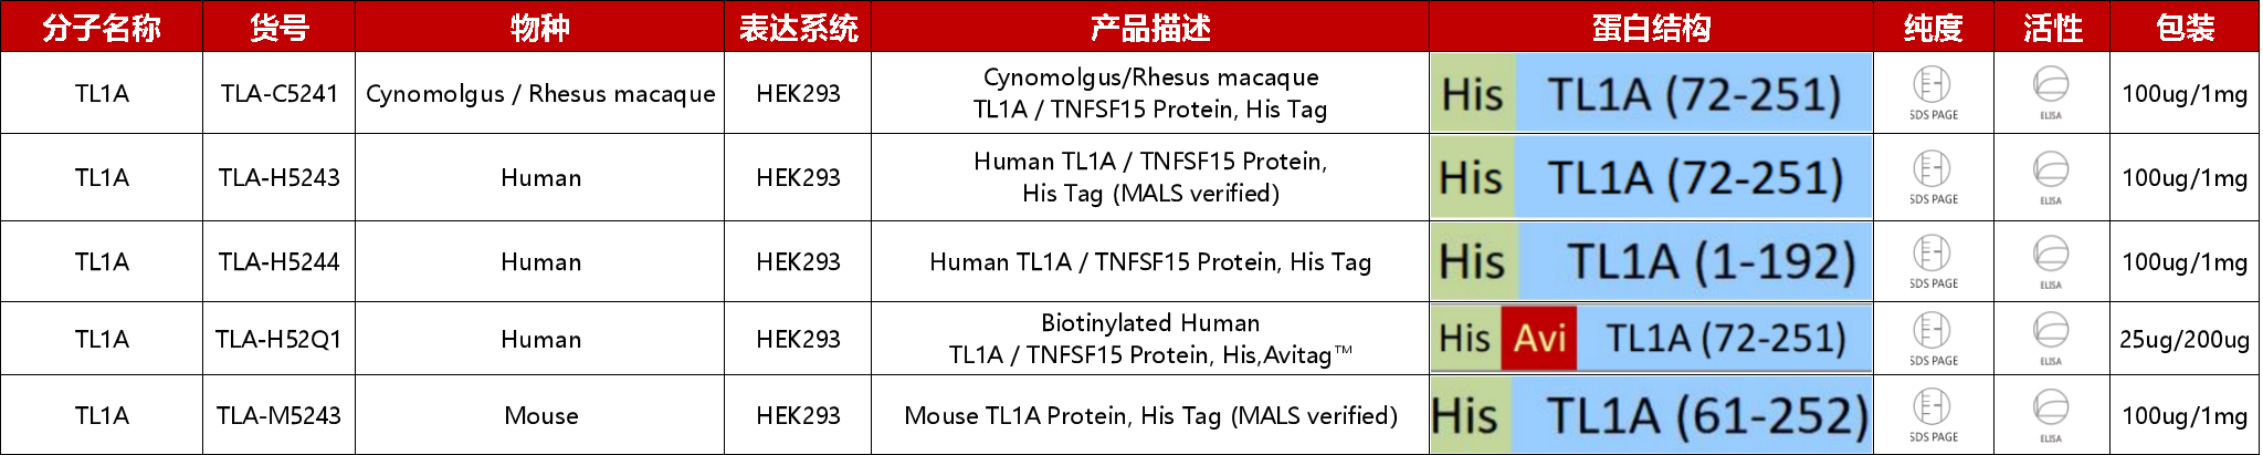 TL1A产品列表